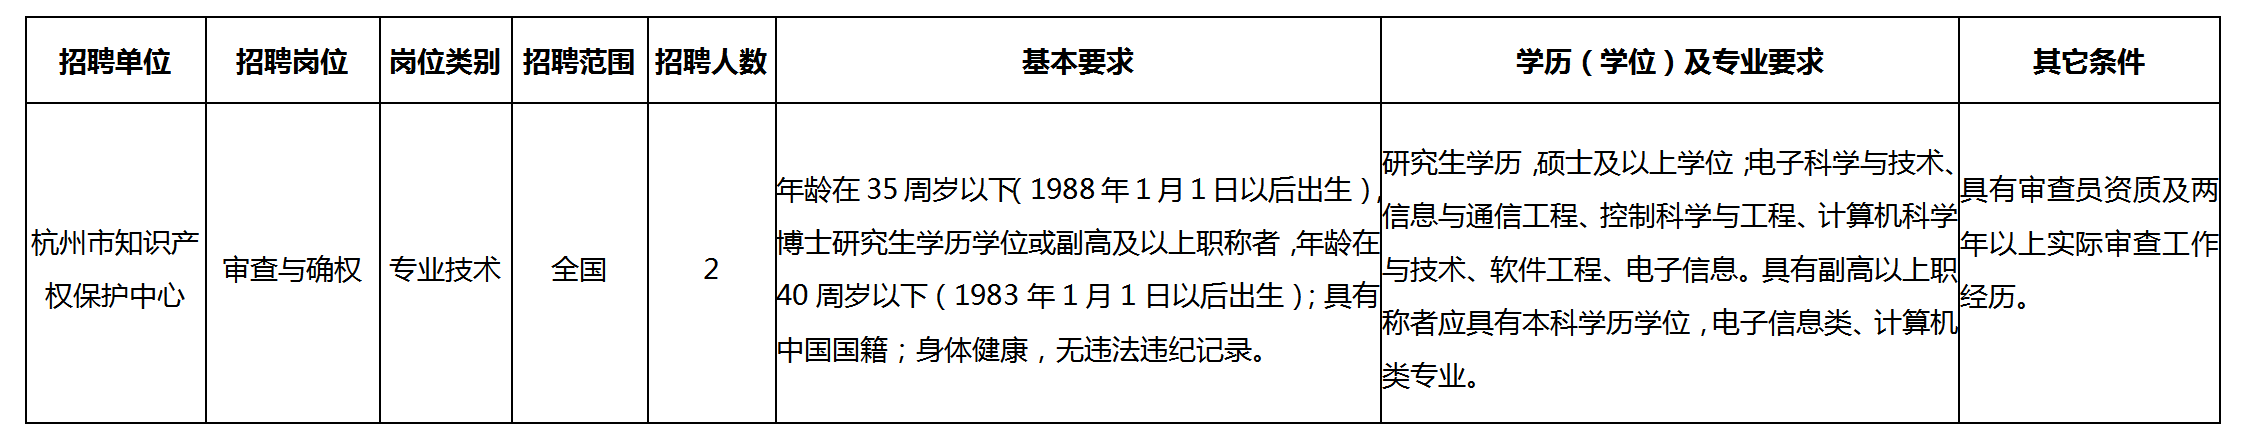 聘！杭州市知识产权保护中心公开招聘「高层次人才2名」